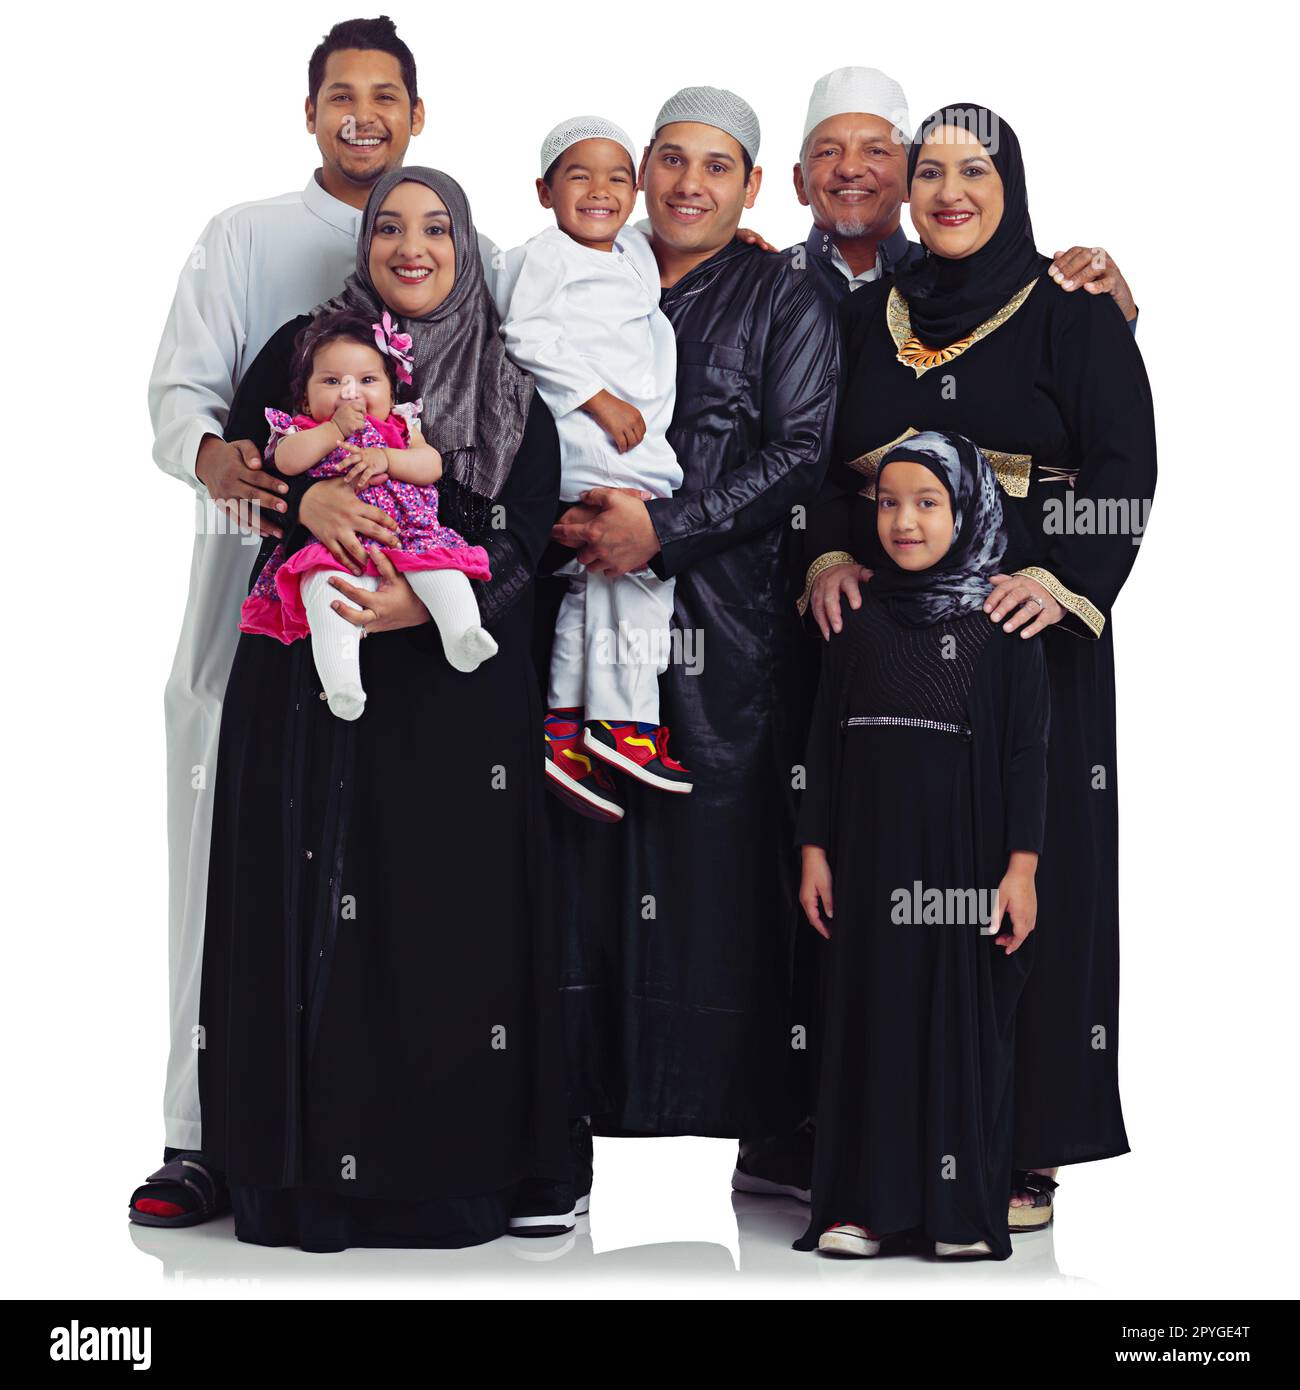 il perfetto ritratto di famiglia. Studio ritratto di una famiglia musulmana multigenerazionale isolato su bianco. Foto Stock